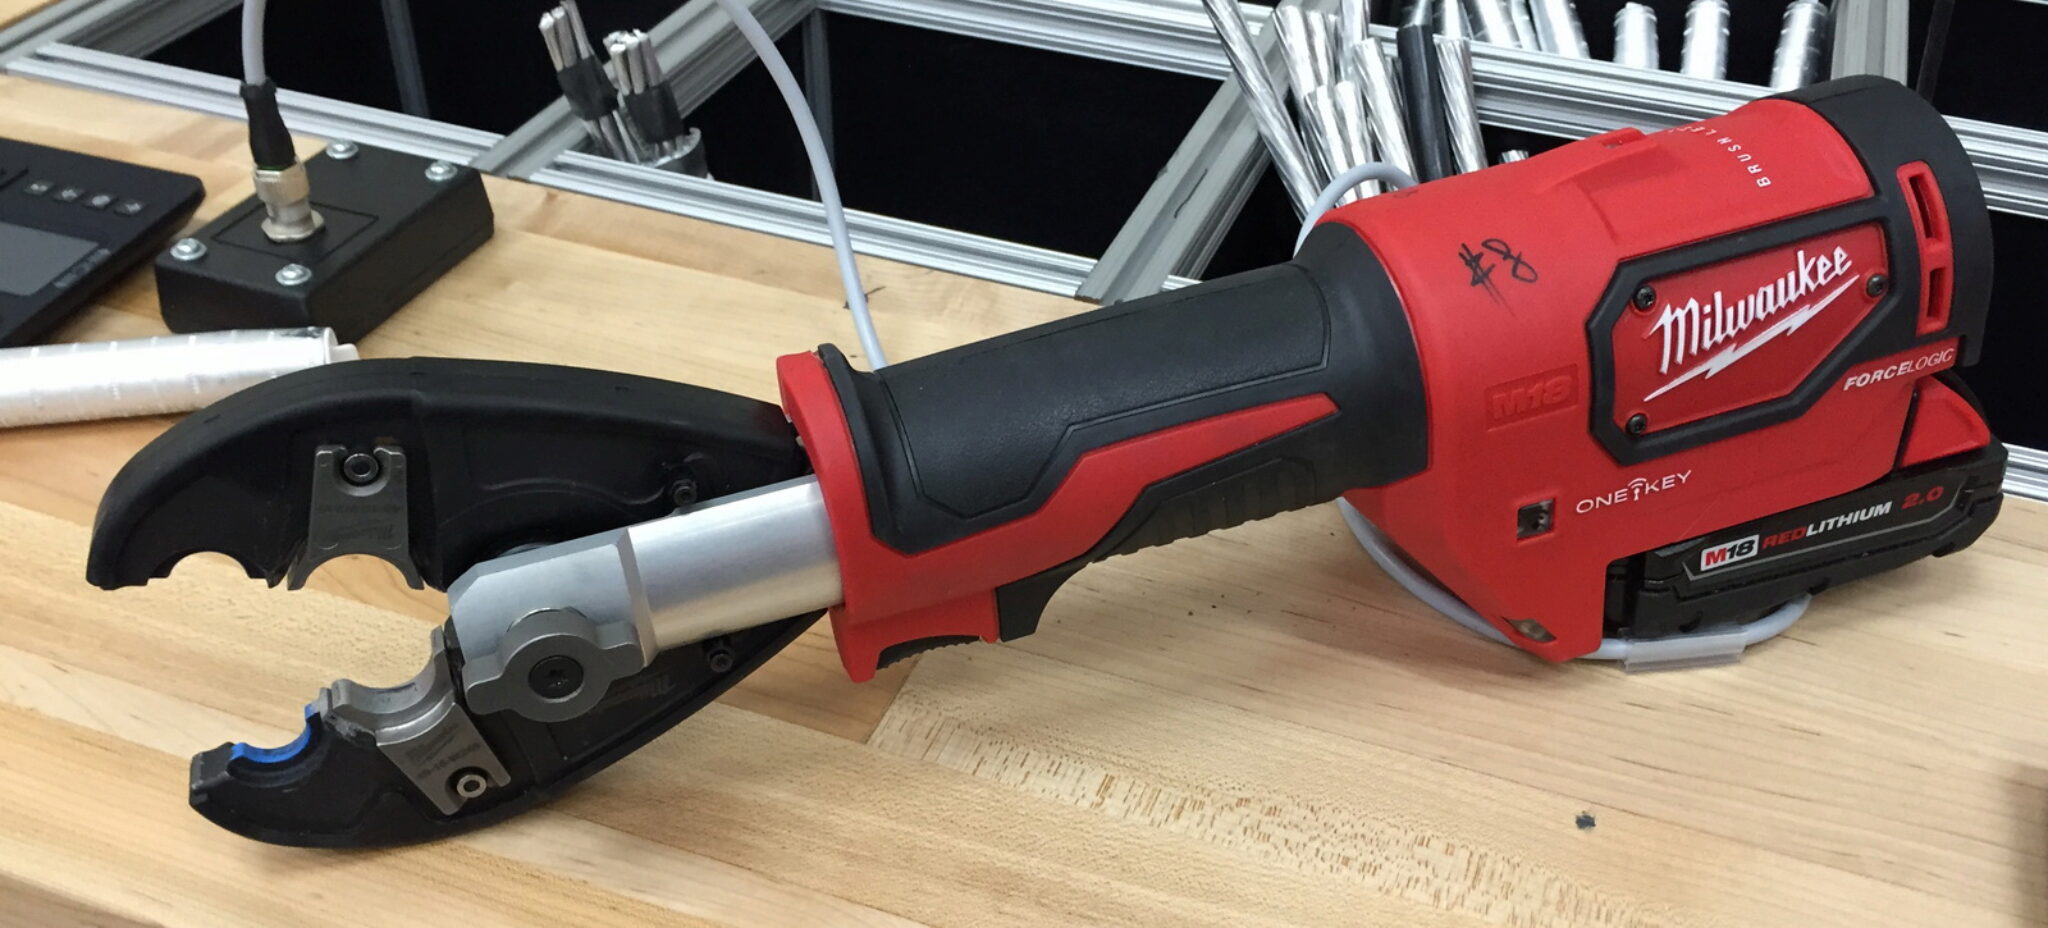 convient également pour perceuse Dewalt 20 V lot de 5, rouge Lot de 5 supports à outils pour outils Milwaukee M18 cintre 12 V 